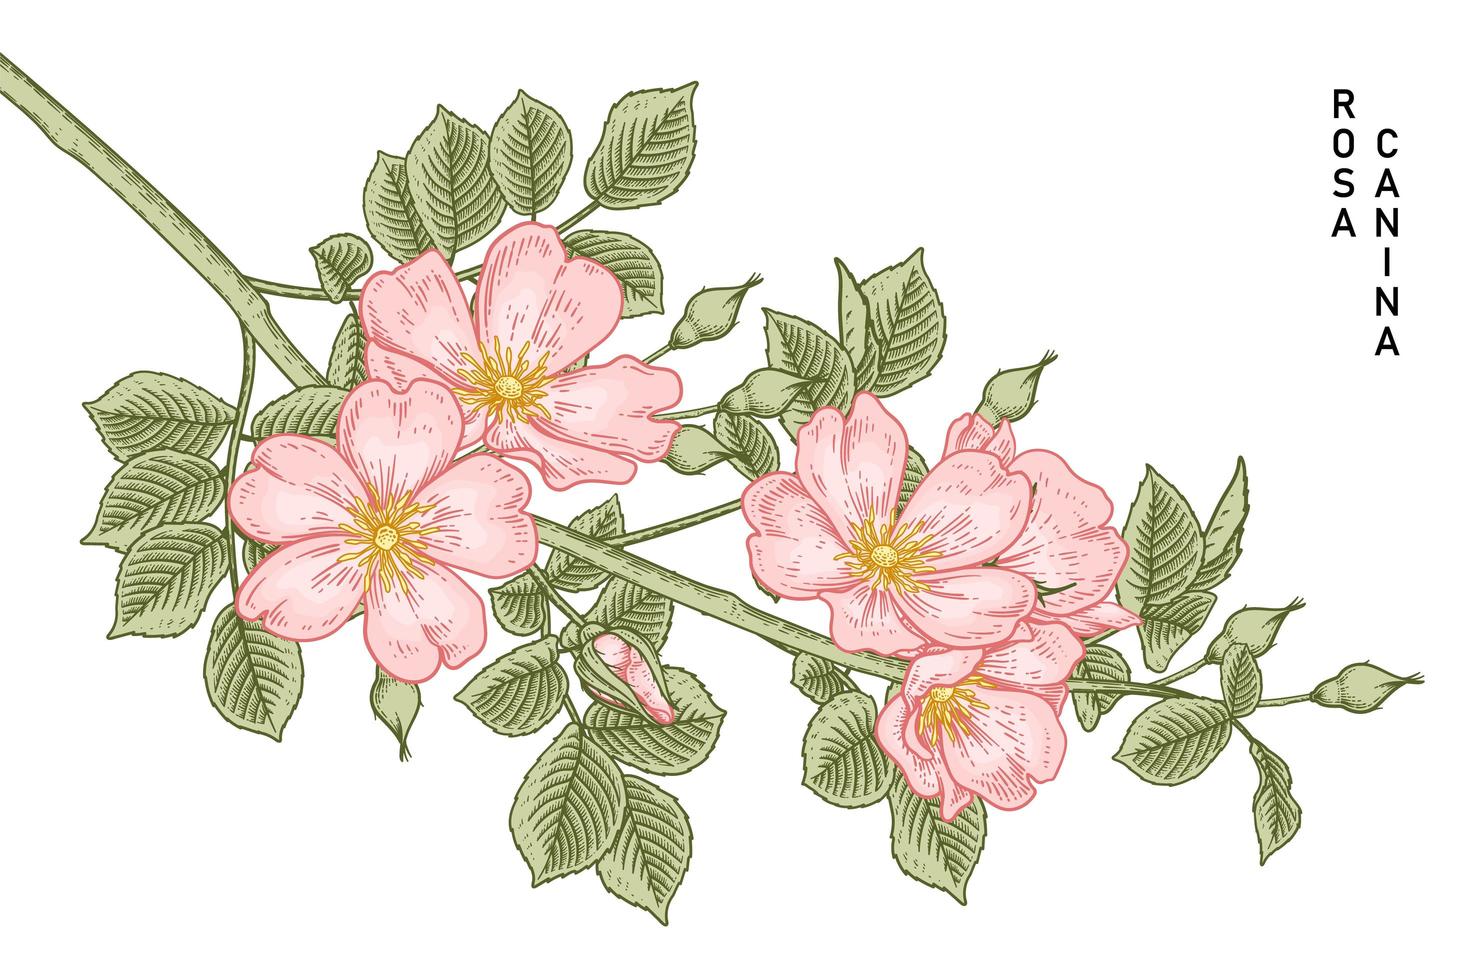 rama de perro rosa rosa o rosa canina con flores y hojas ilustraciones botánicas dibujadas a mano vector